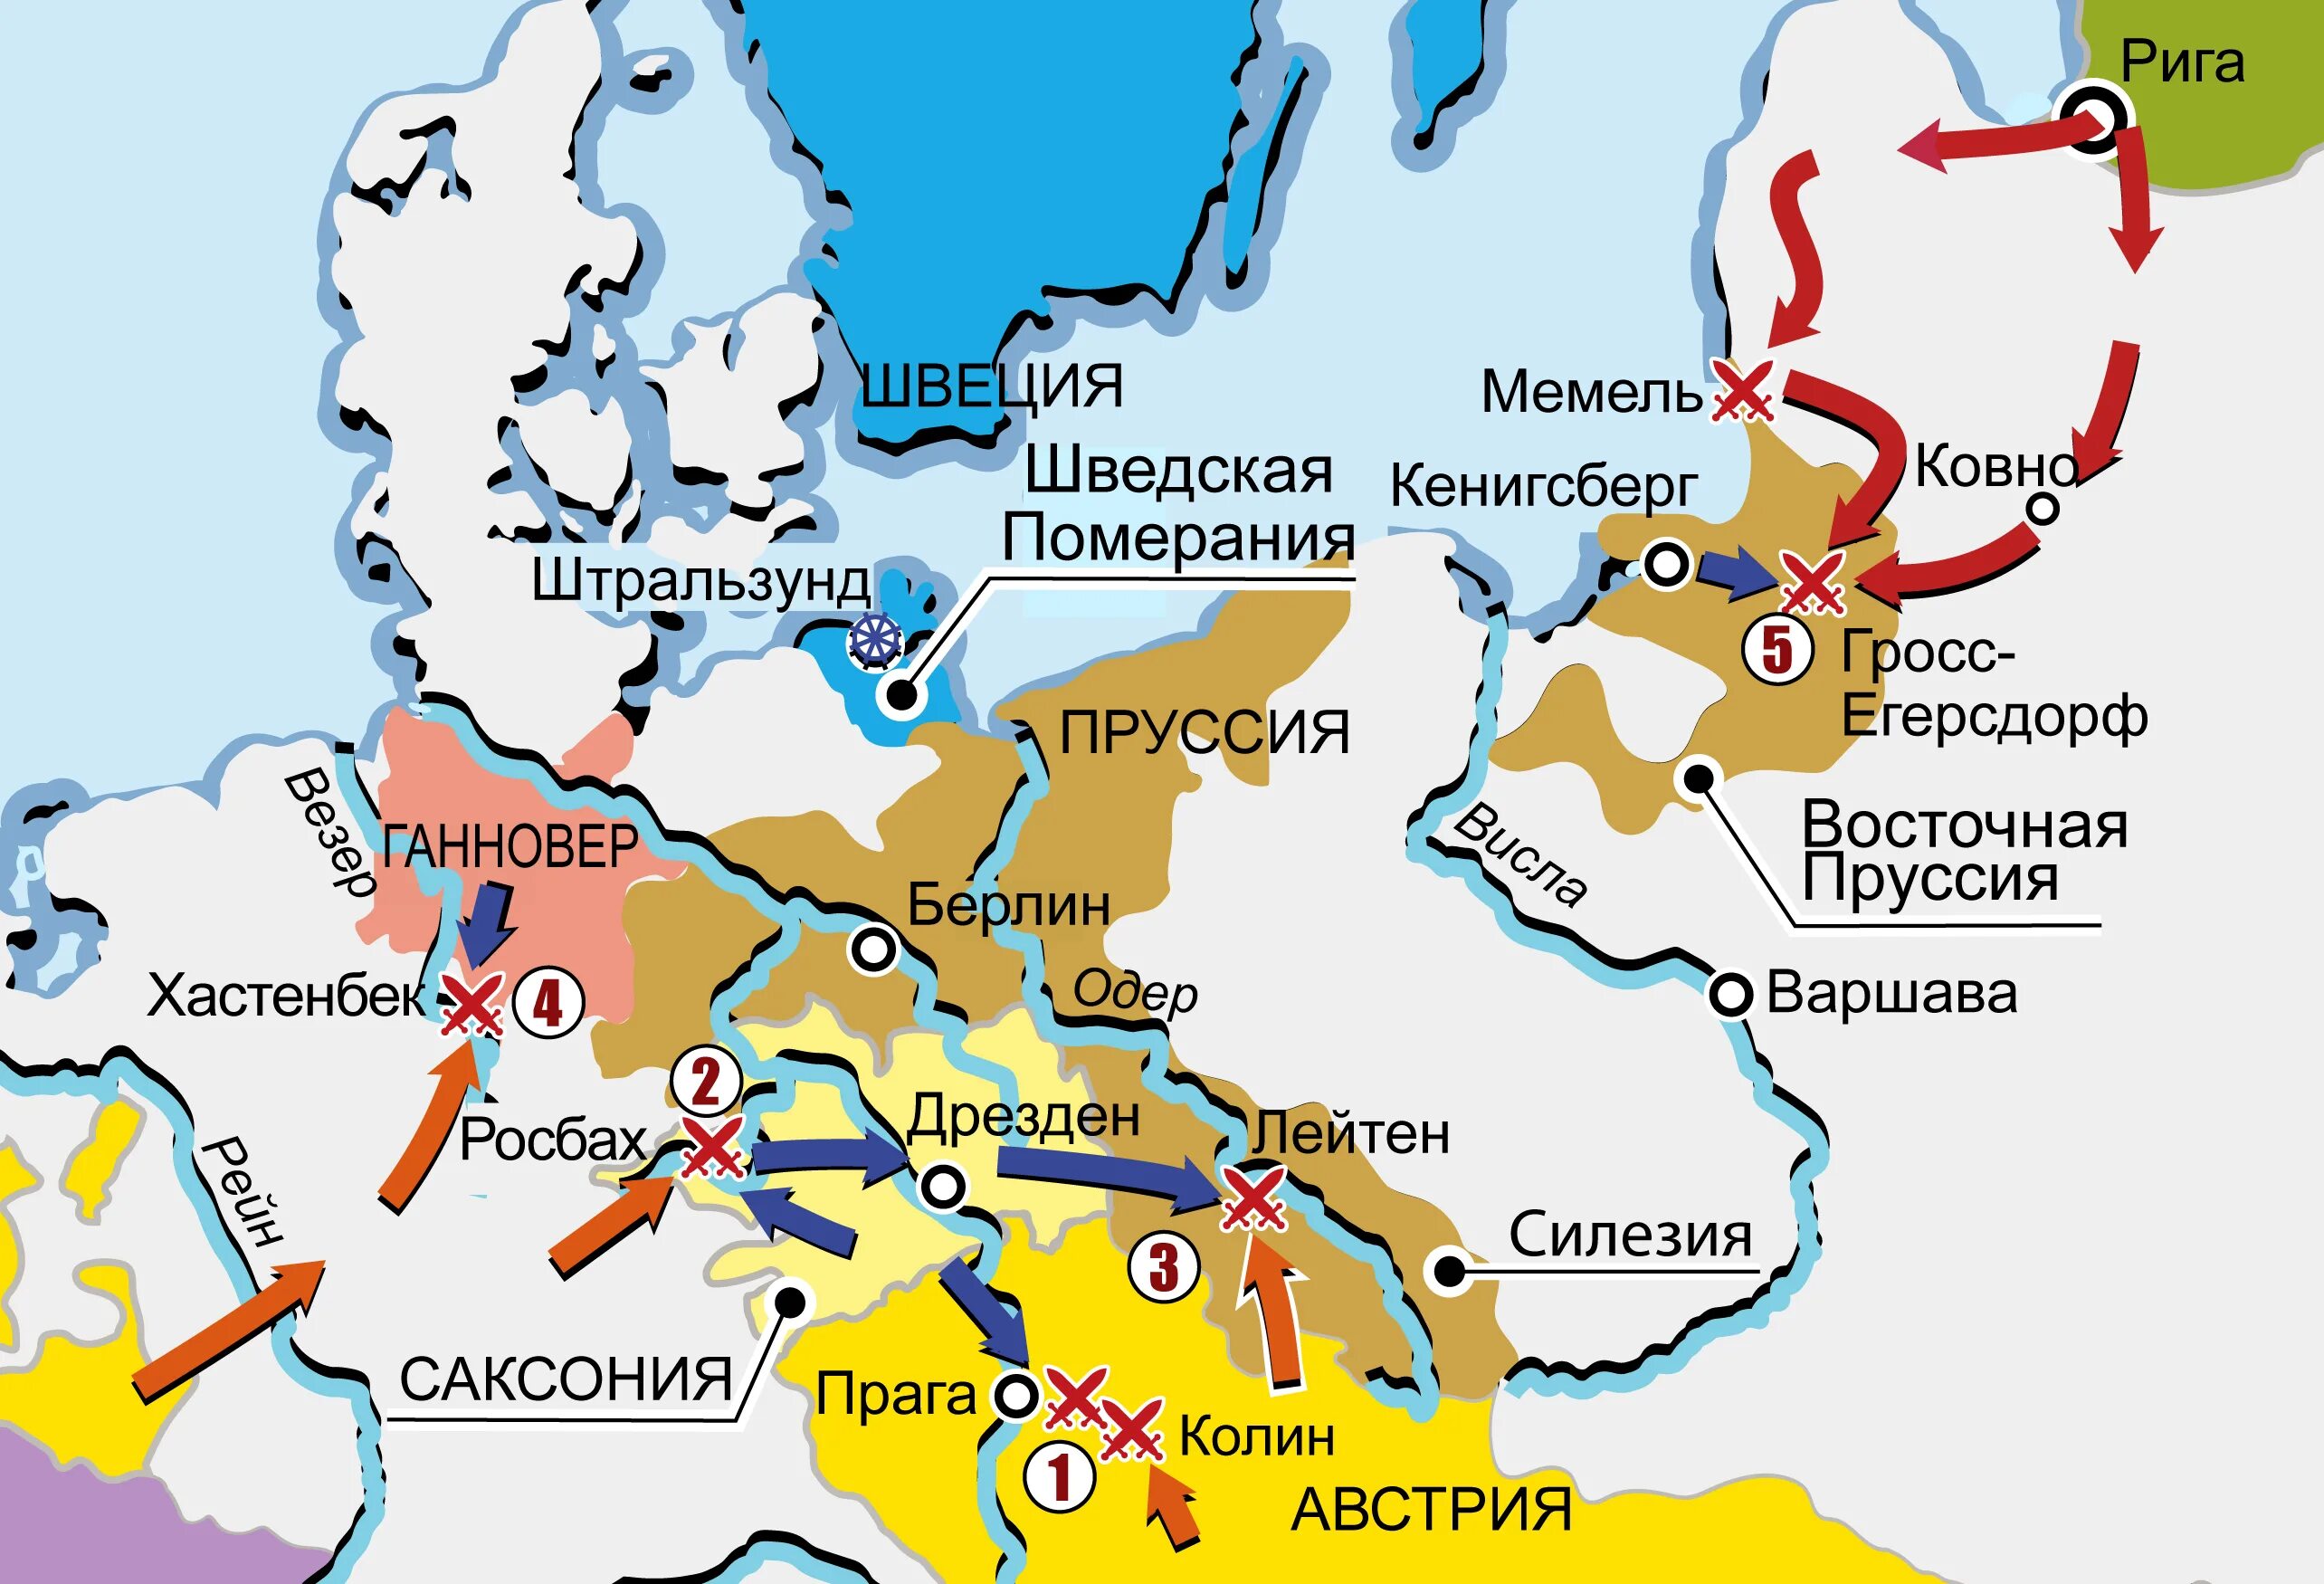 Карта семилетней войны 1756-1763. Государство противник россии в семилетней войне